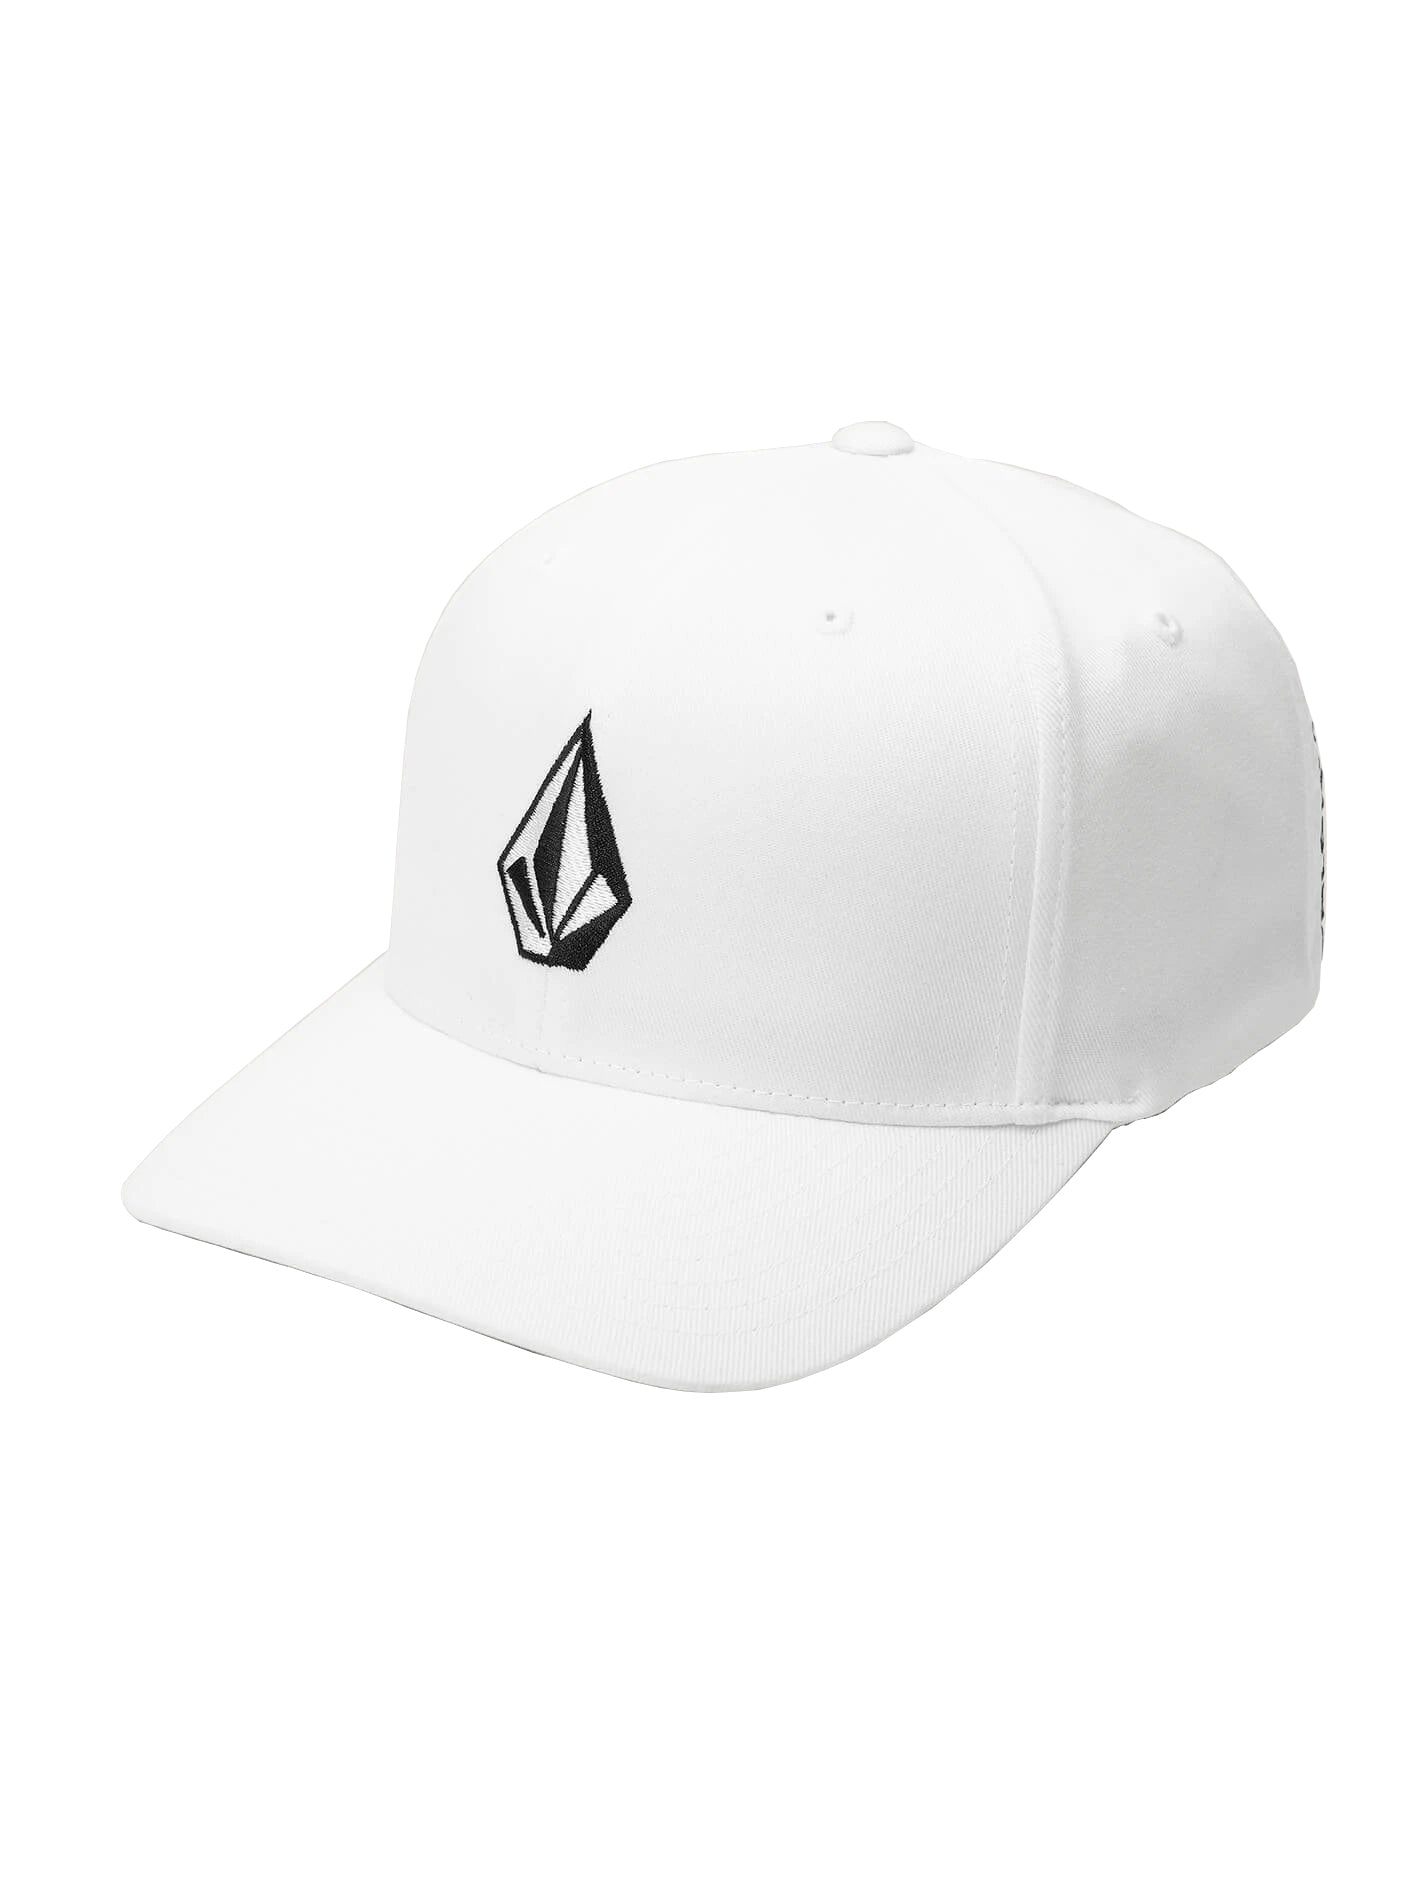 Volcom Full Stone X-Fit Mens Hat WHT-White S/M